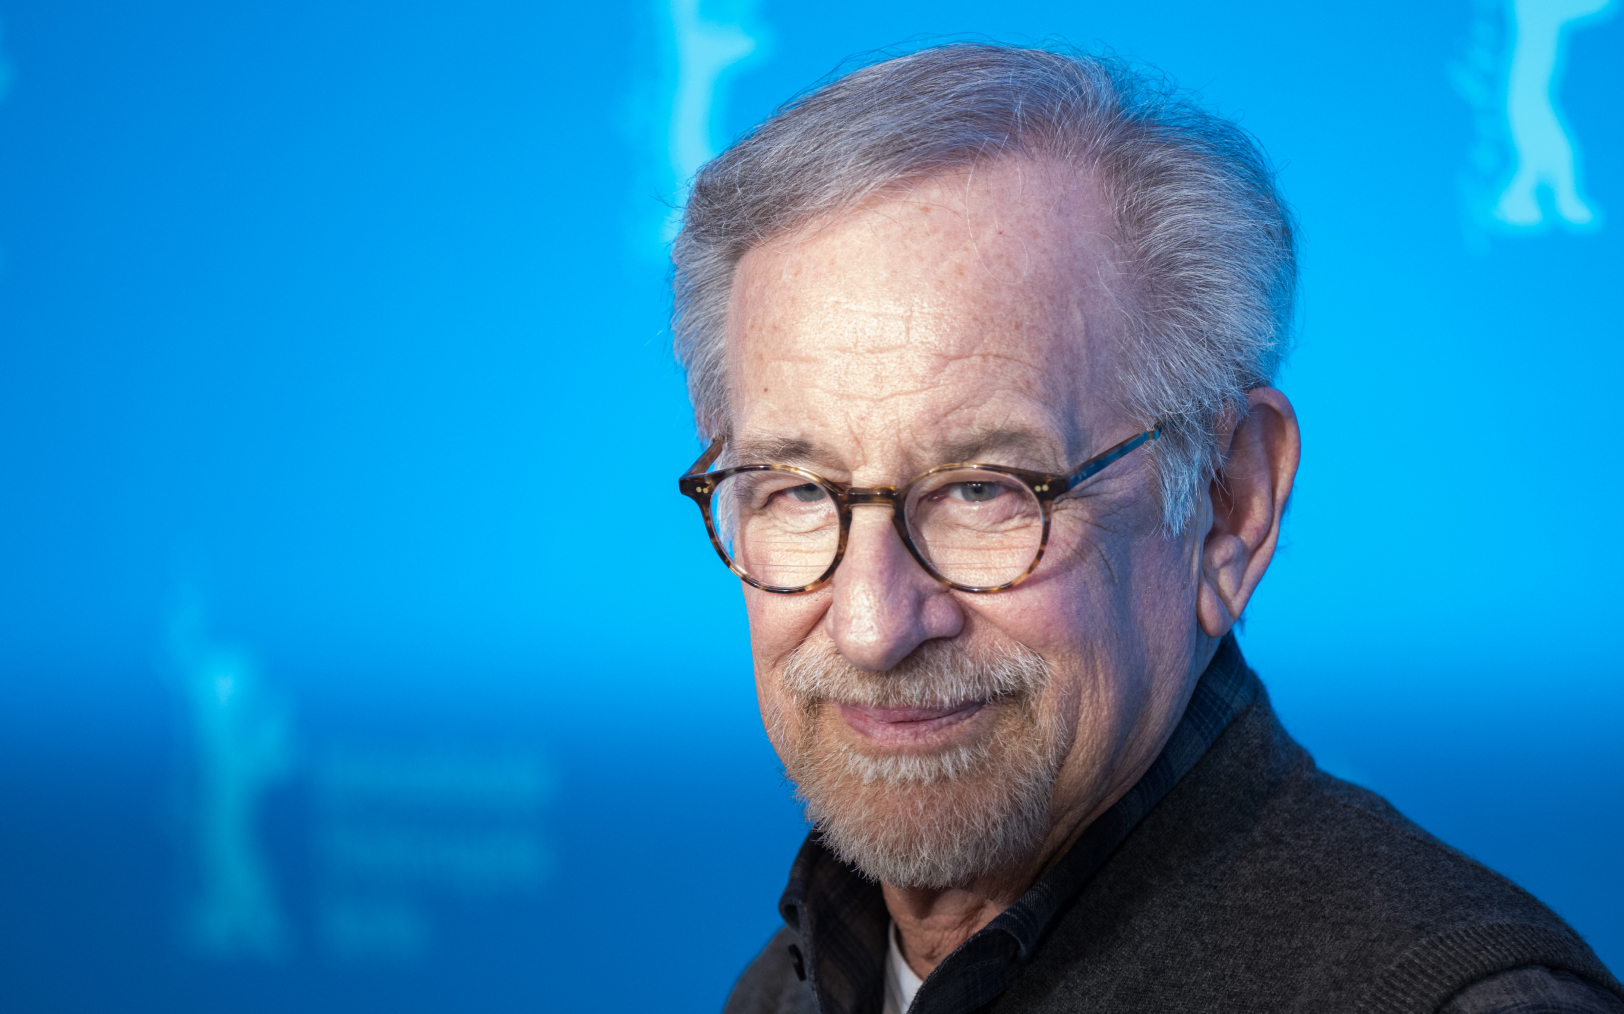 Le cinéaste américain Steven Spielberg en février, lors de la présentation de son nouveau film « The Fabelmans » à la Berlinale 2023. AFP/Stefanie Loos